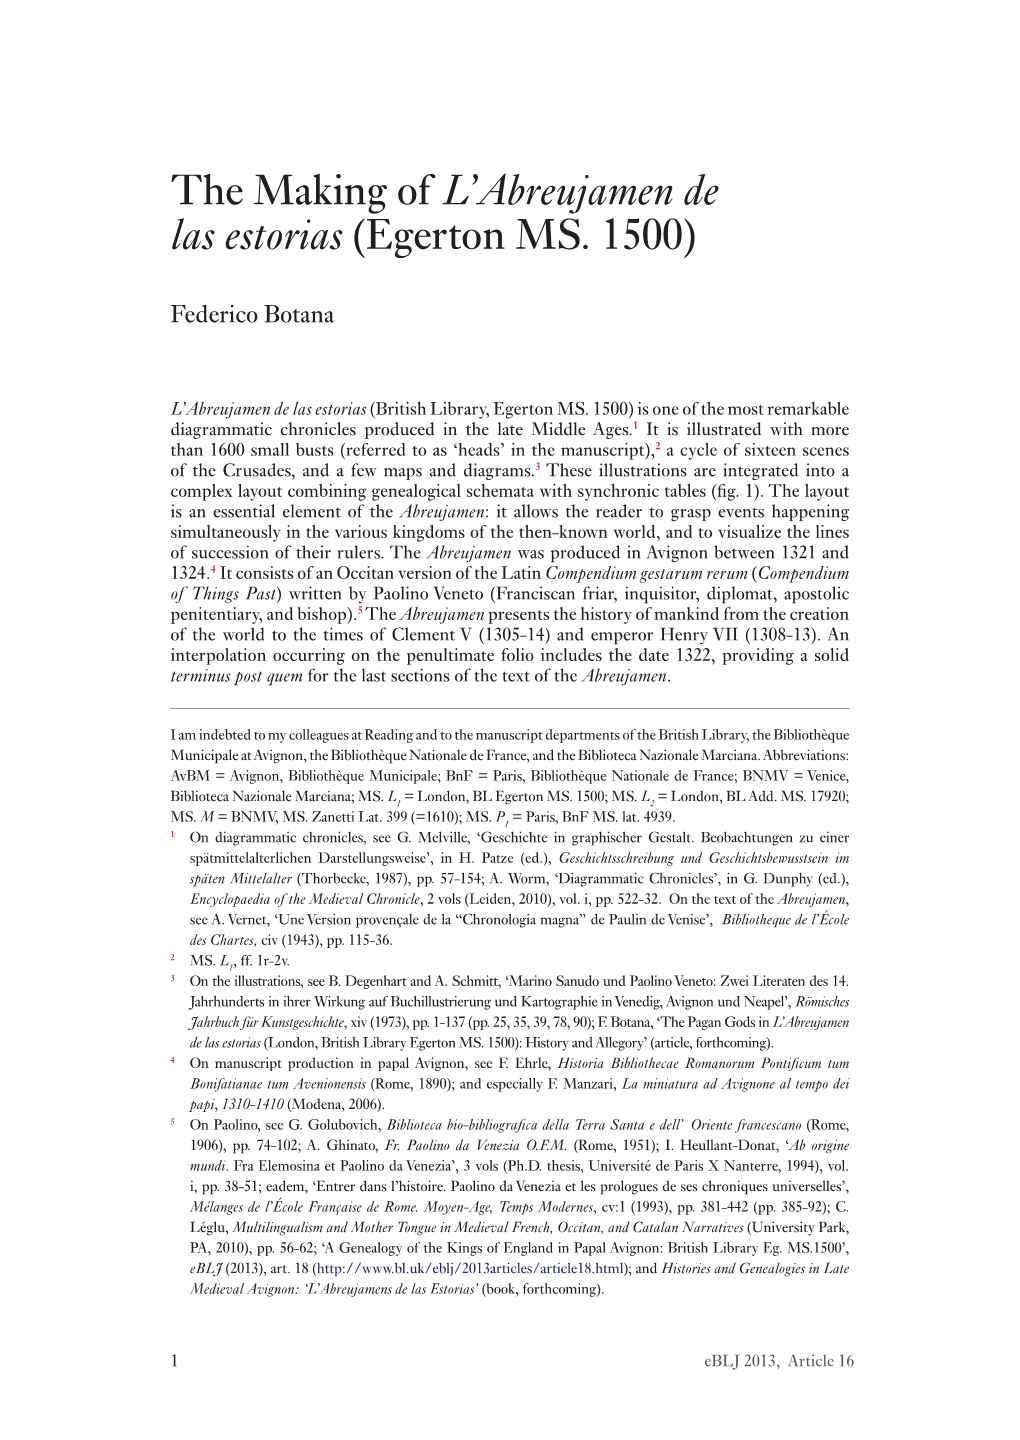 The Making of L'abreujamen De Las Estorias (Egerton MS. 1500)